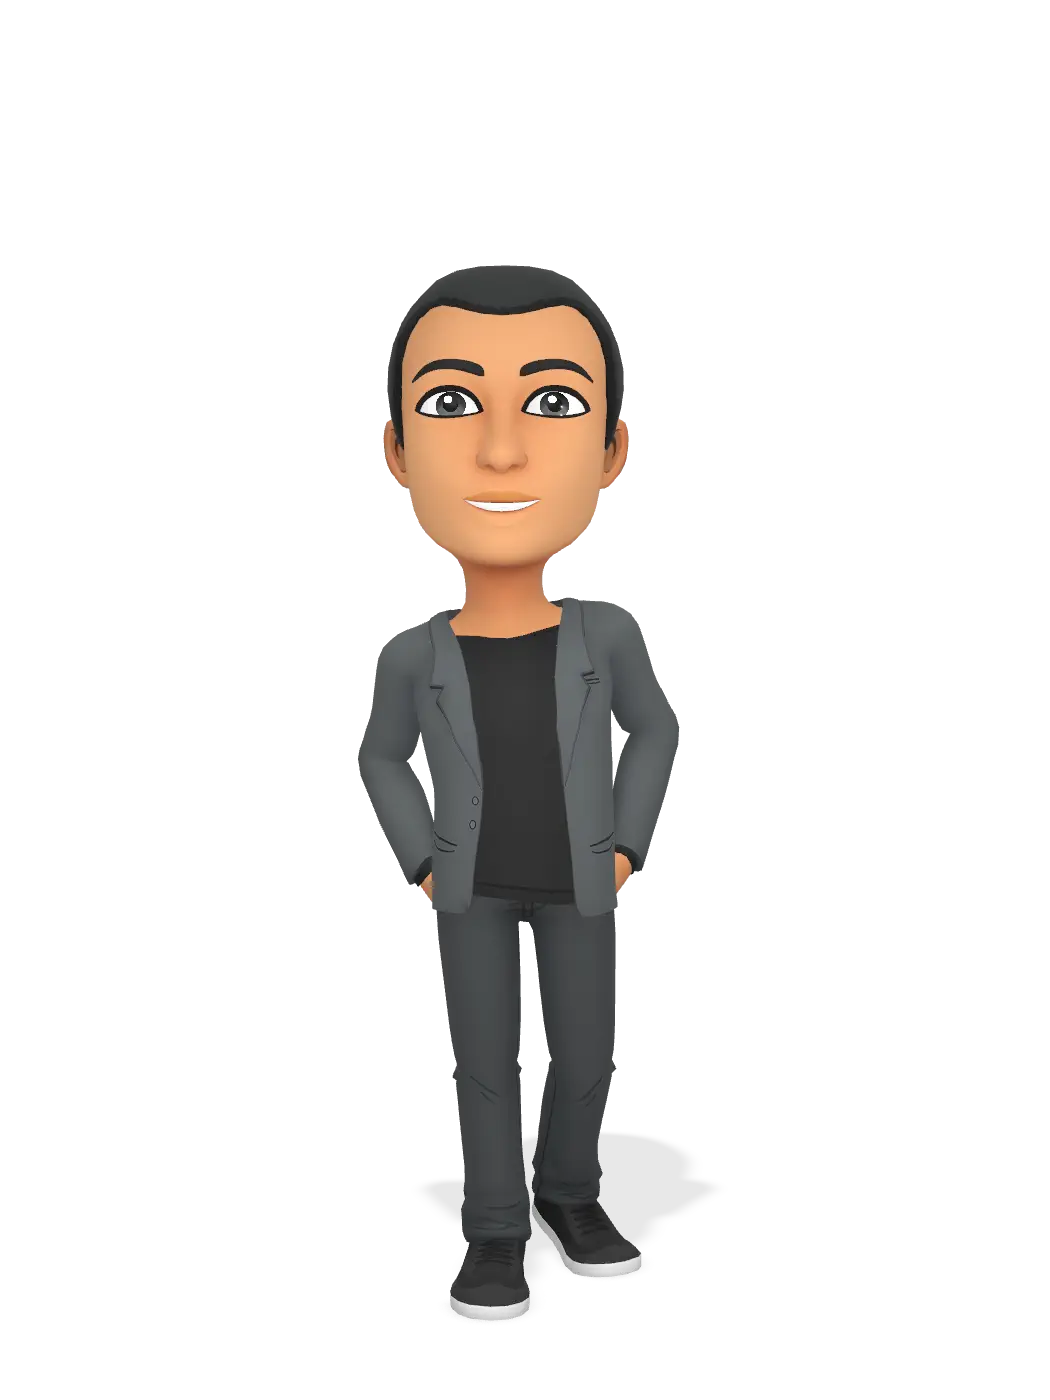 3D Bitmoji for paulbrantly avatar